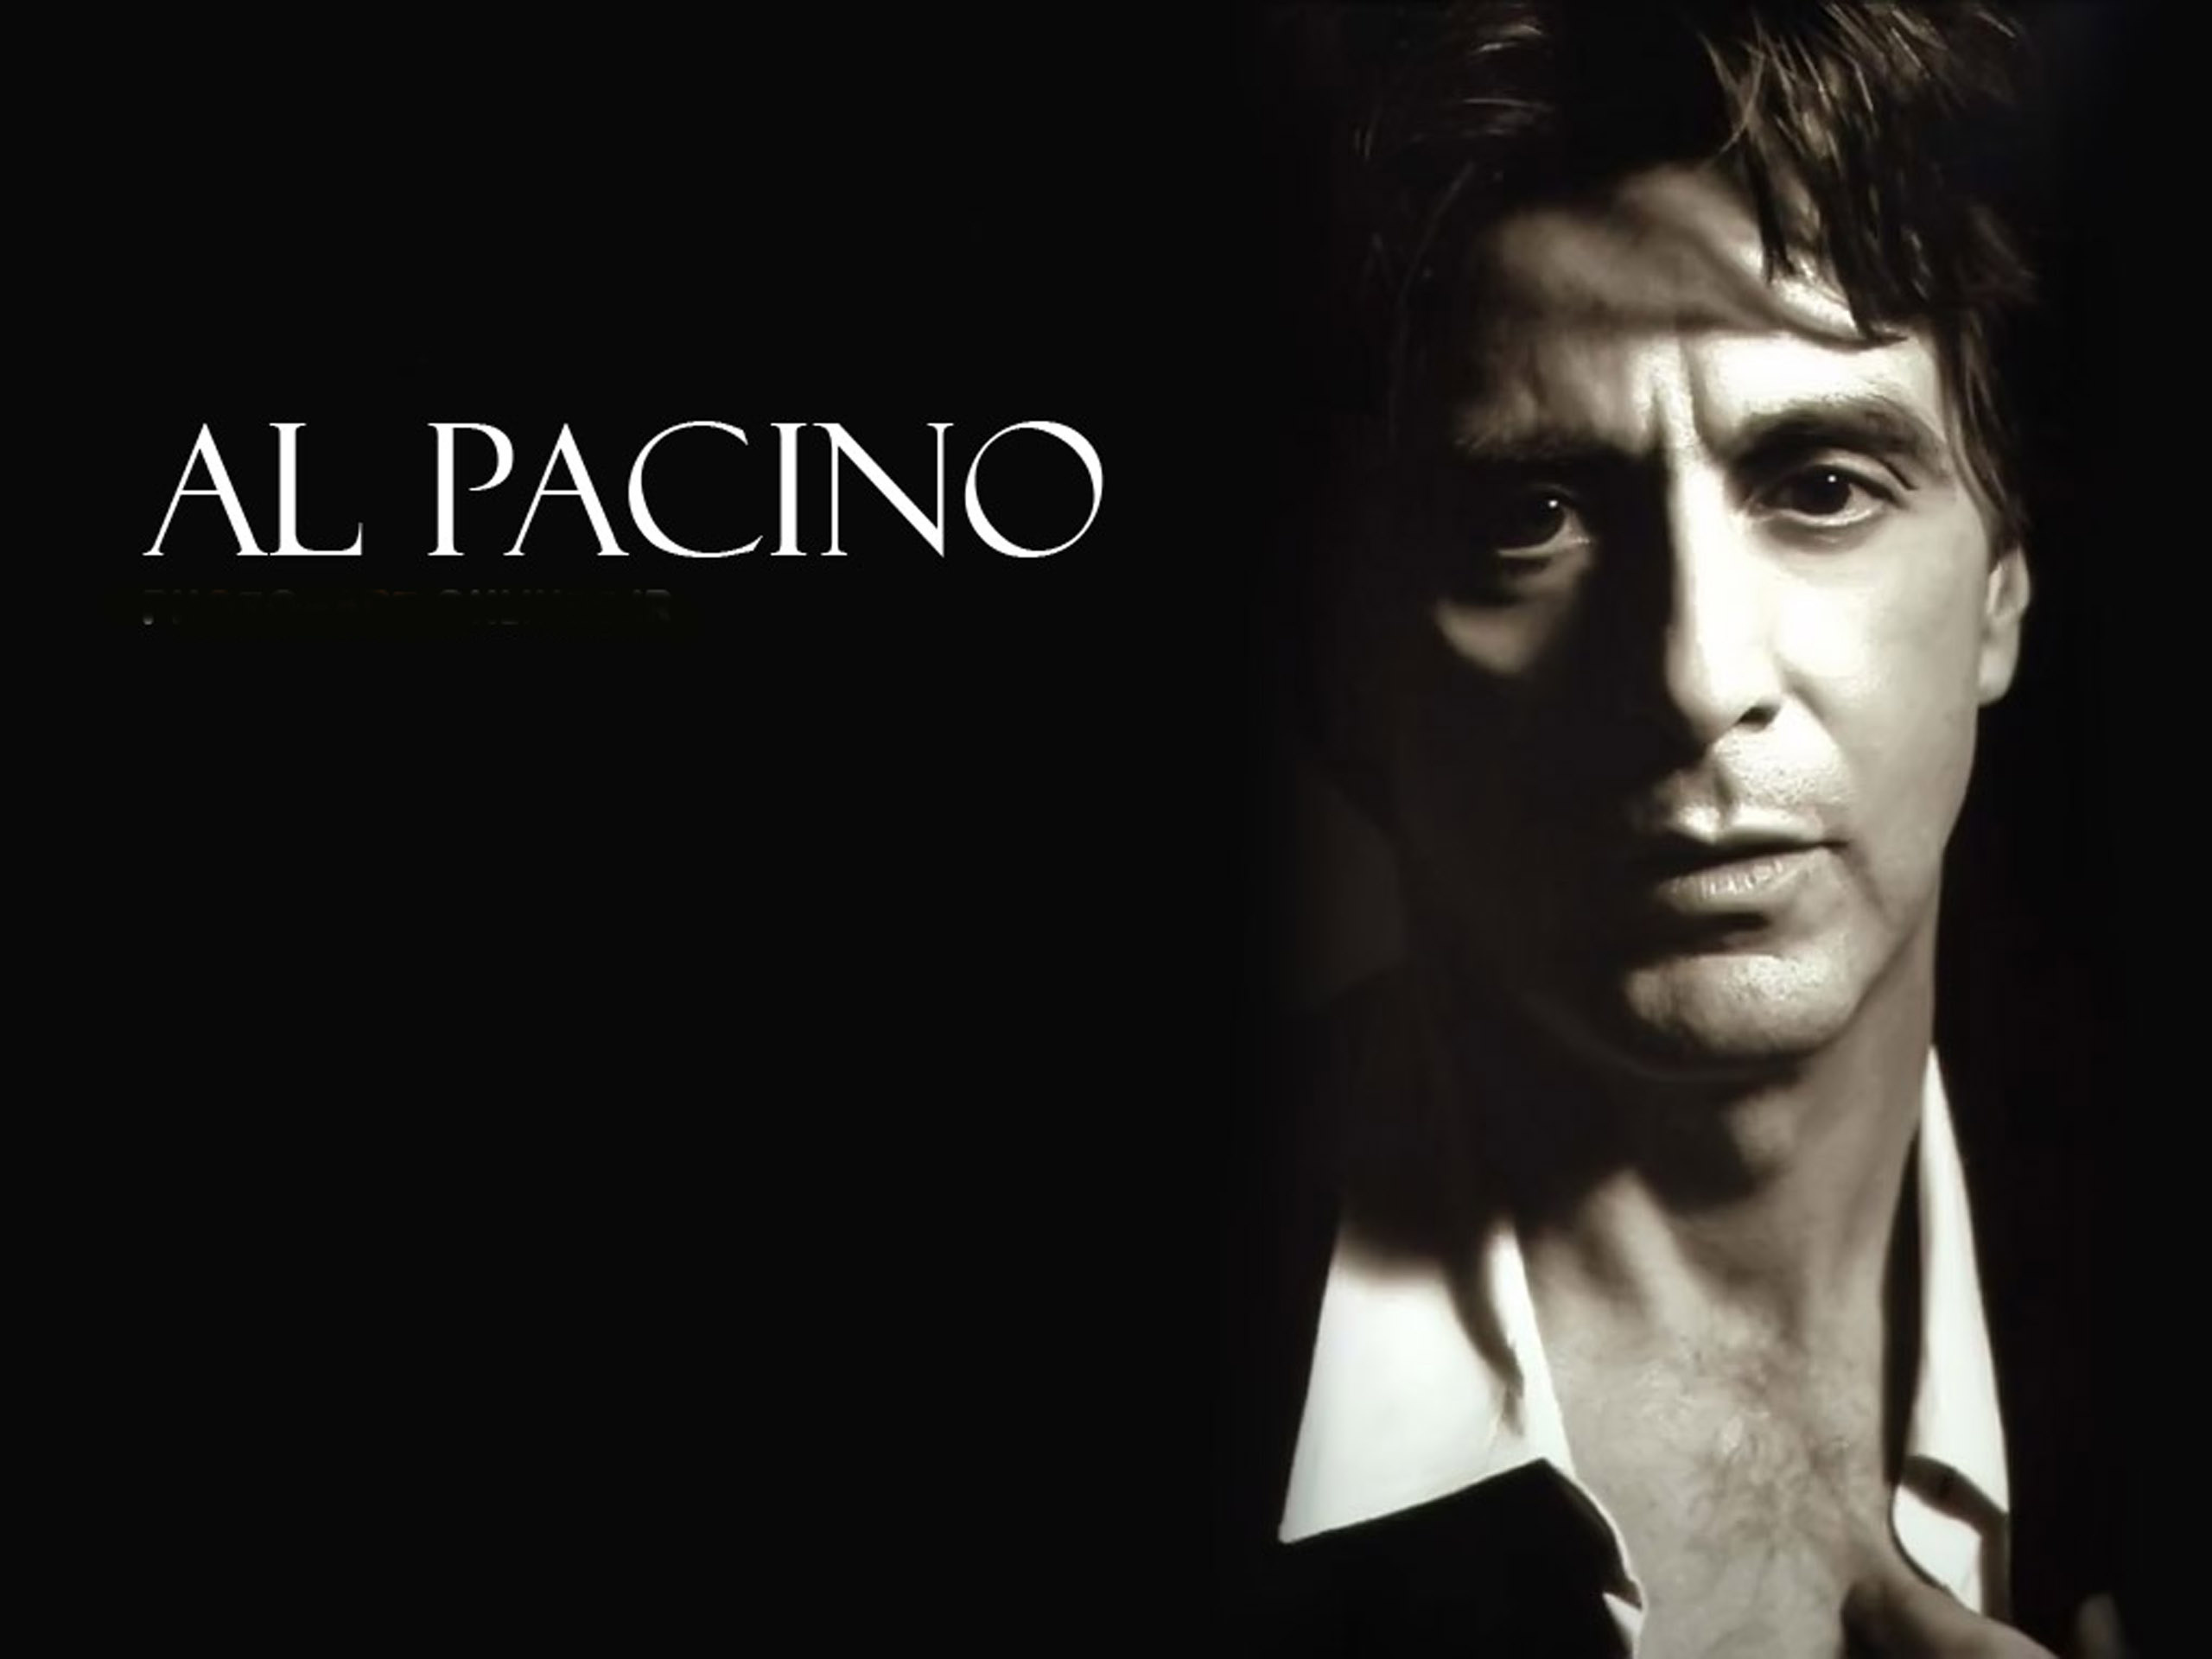 Al Pacino, Scarface wallpaper, Michelle Pfeiffer, Al Pacino wallpapers, 2560x1920 HD Desktop